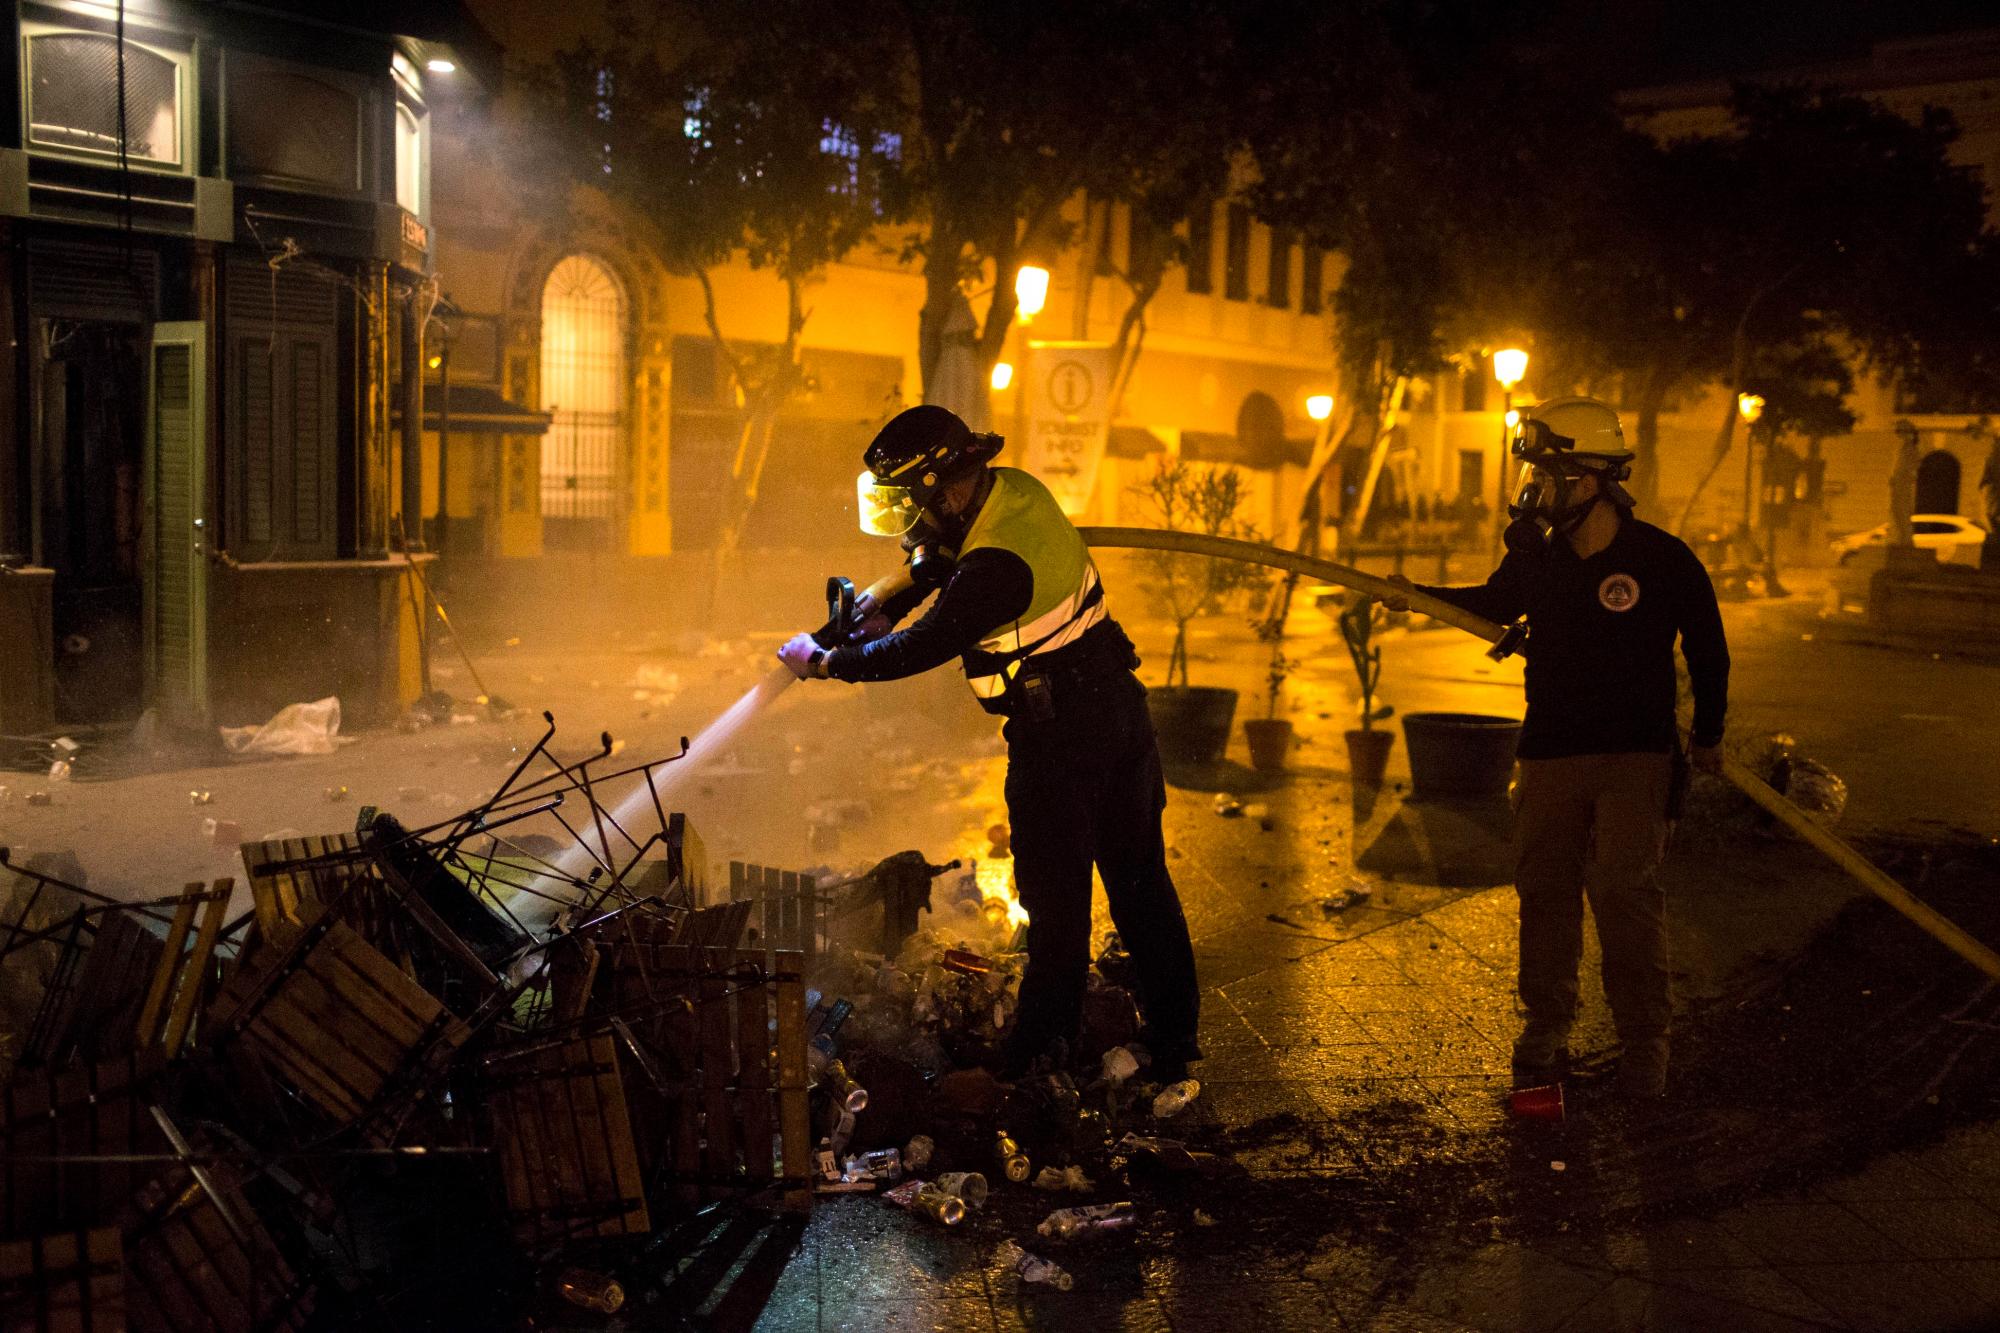 Los bomberos apagaron el incendio de los muebles urbanos quemados después de los choques, exigiendo la renuncia del gobernador Ricardo Rossello, en San Juan, Puerto Rico, el jueves 18 de julio de 2019.